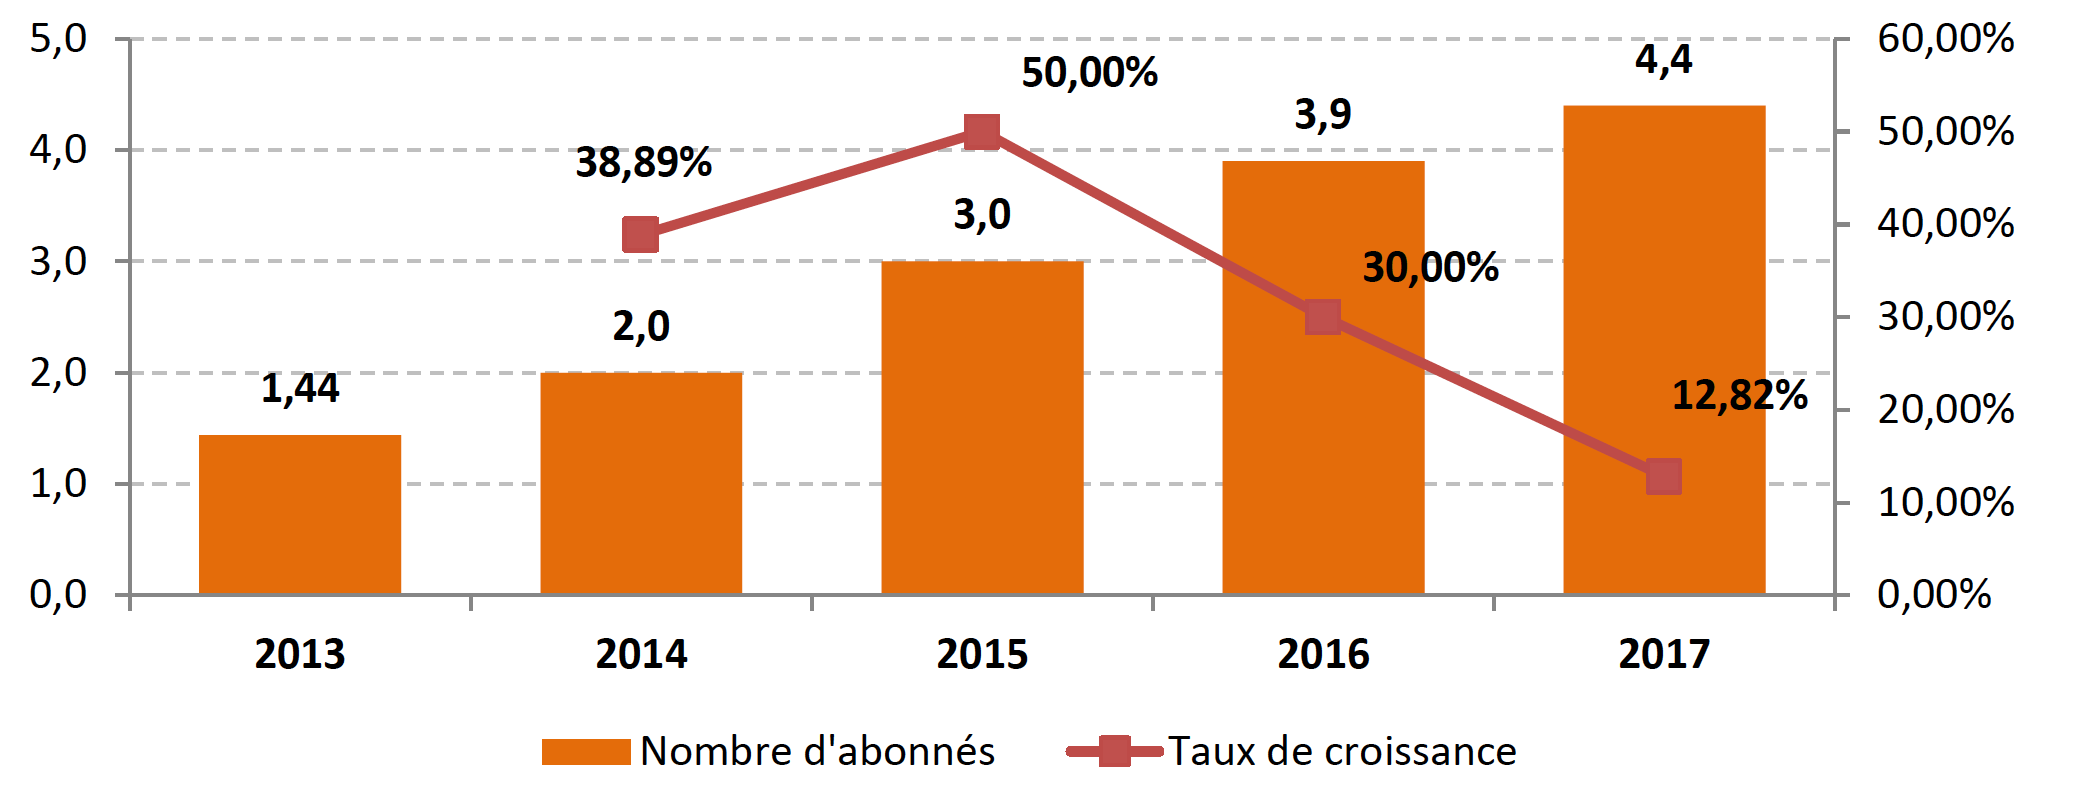 Évolution du nombre d’abonnés à des services de streaming audio de 2013 à 2017 (En millions) Source : SNEP, Le marché de la musique en France en 2017, février 2018.